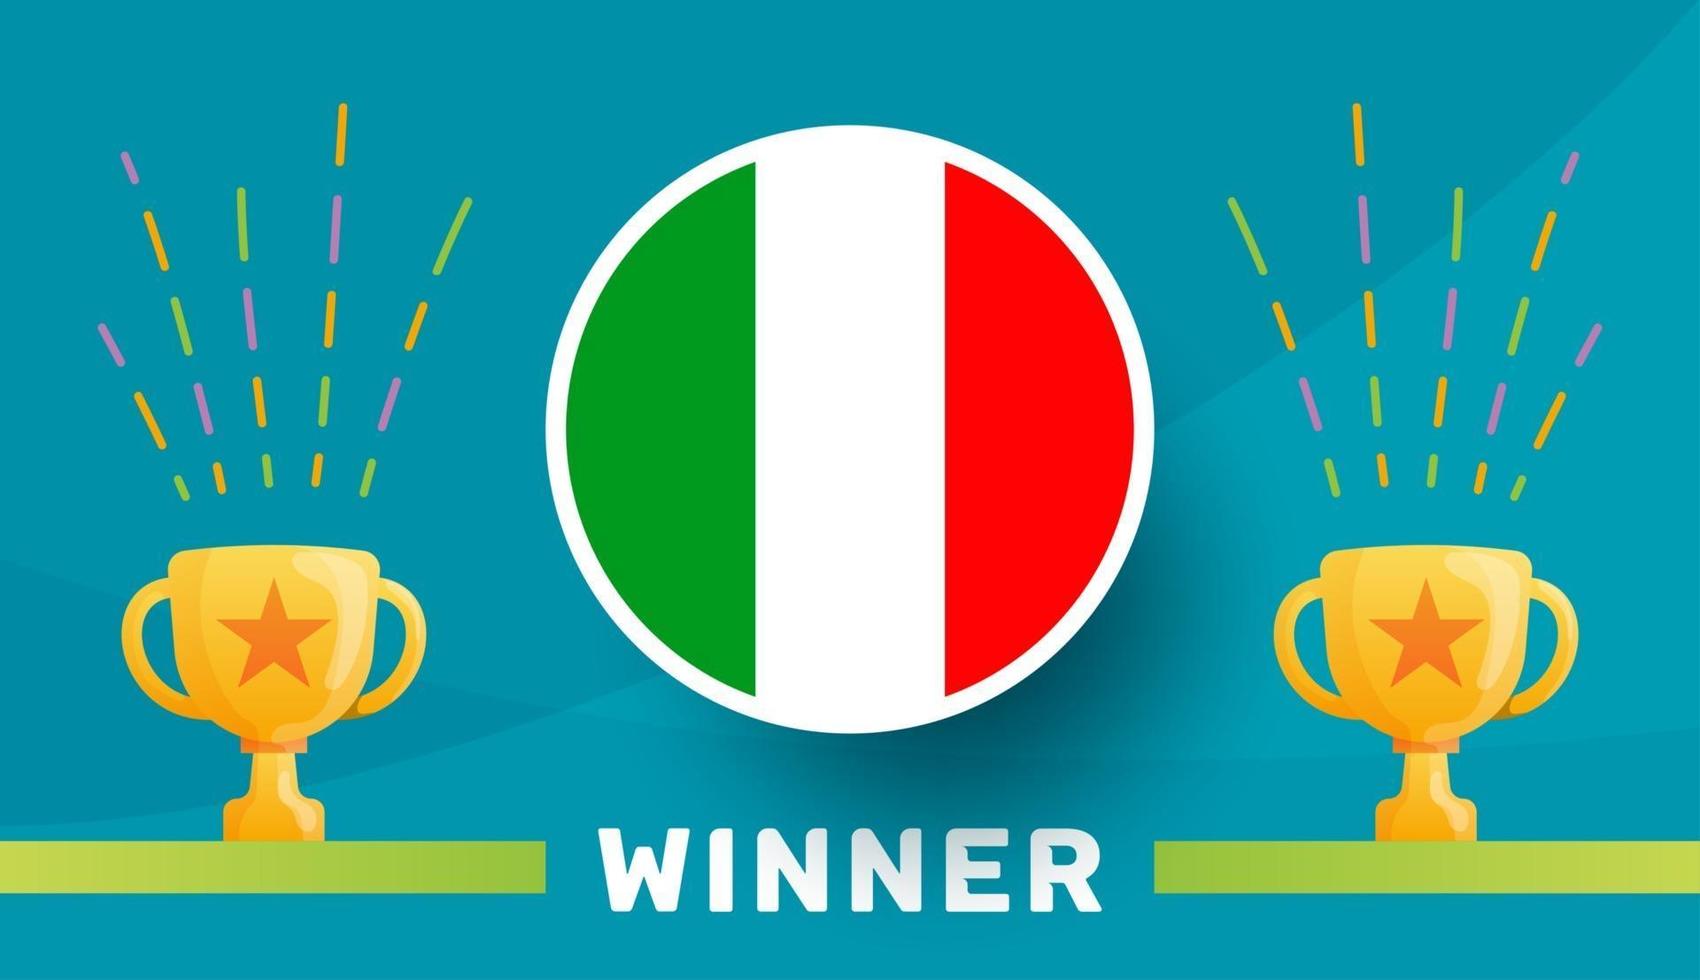 Italie vainqueur illustration vectorielle championnat de football 2020 vecteur